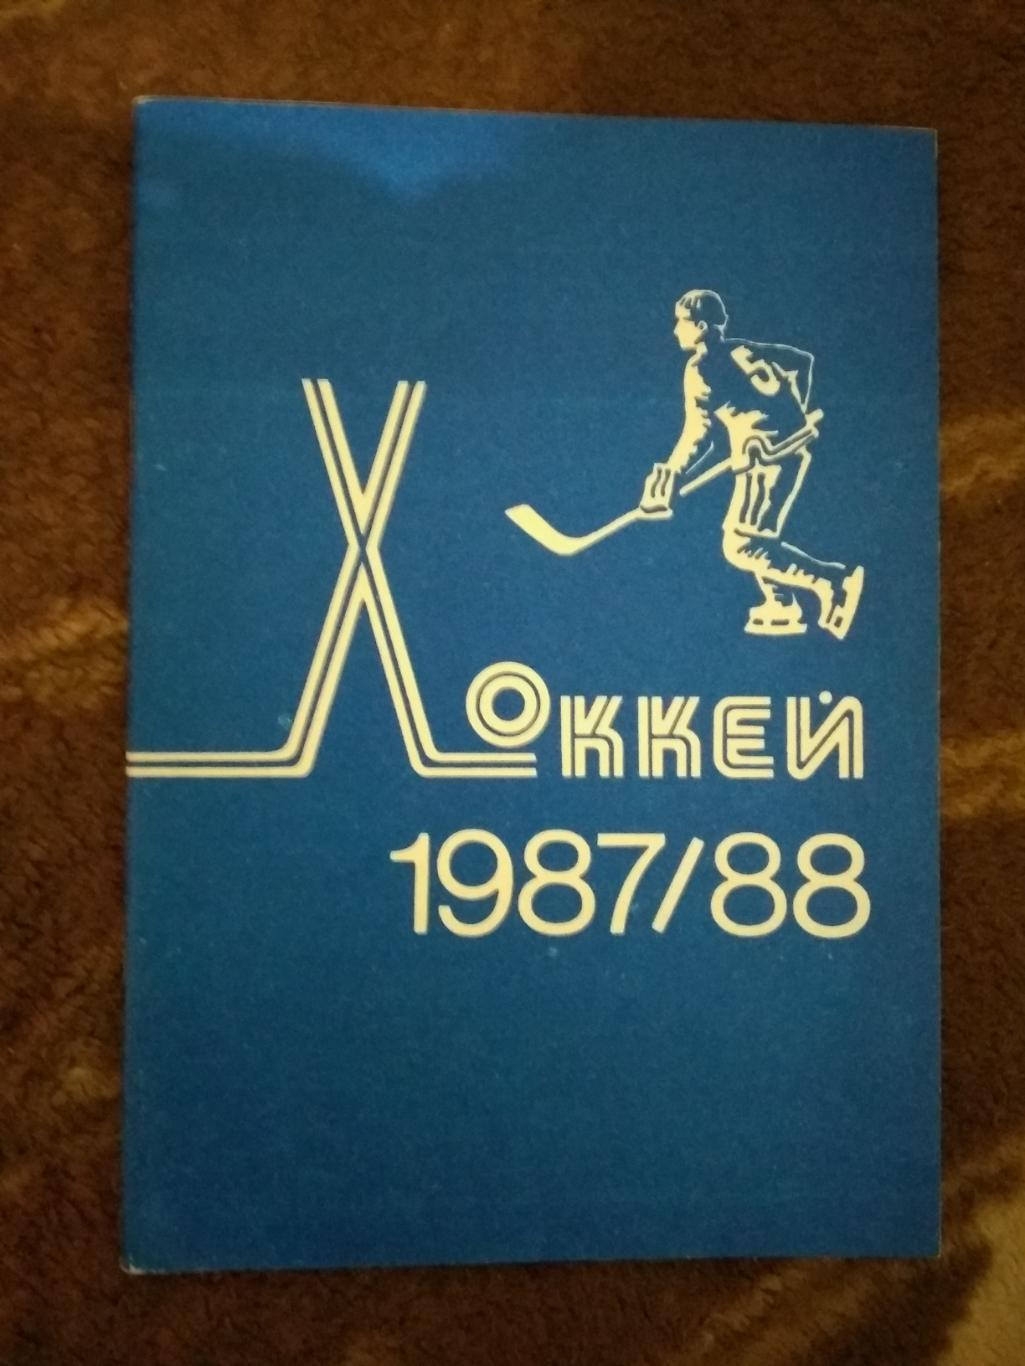 Хоккей.Минск 1987-1988 г.